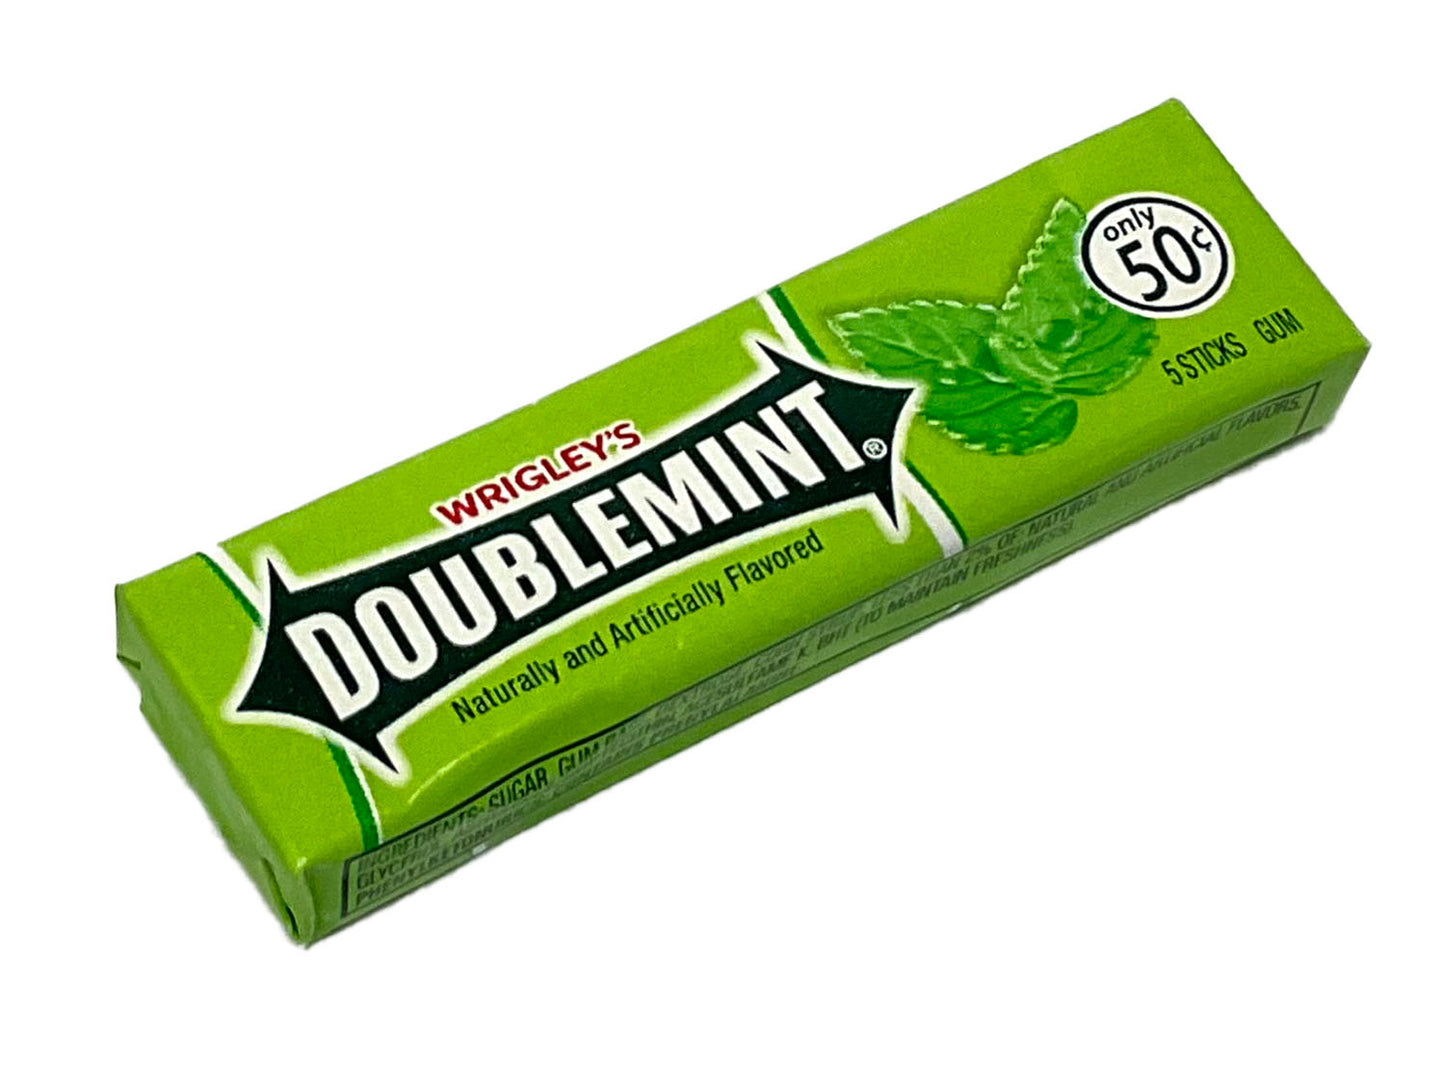 Doublemint Gum - 5-stick pack